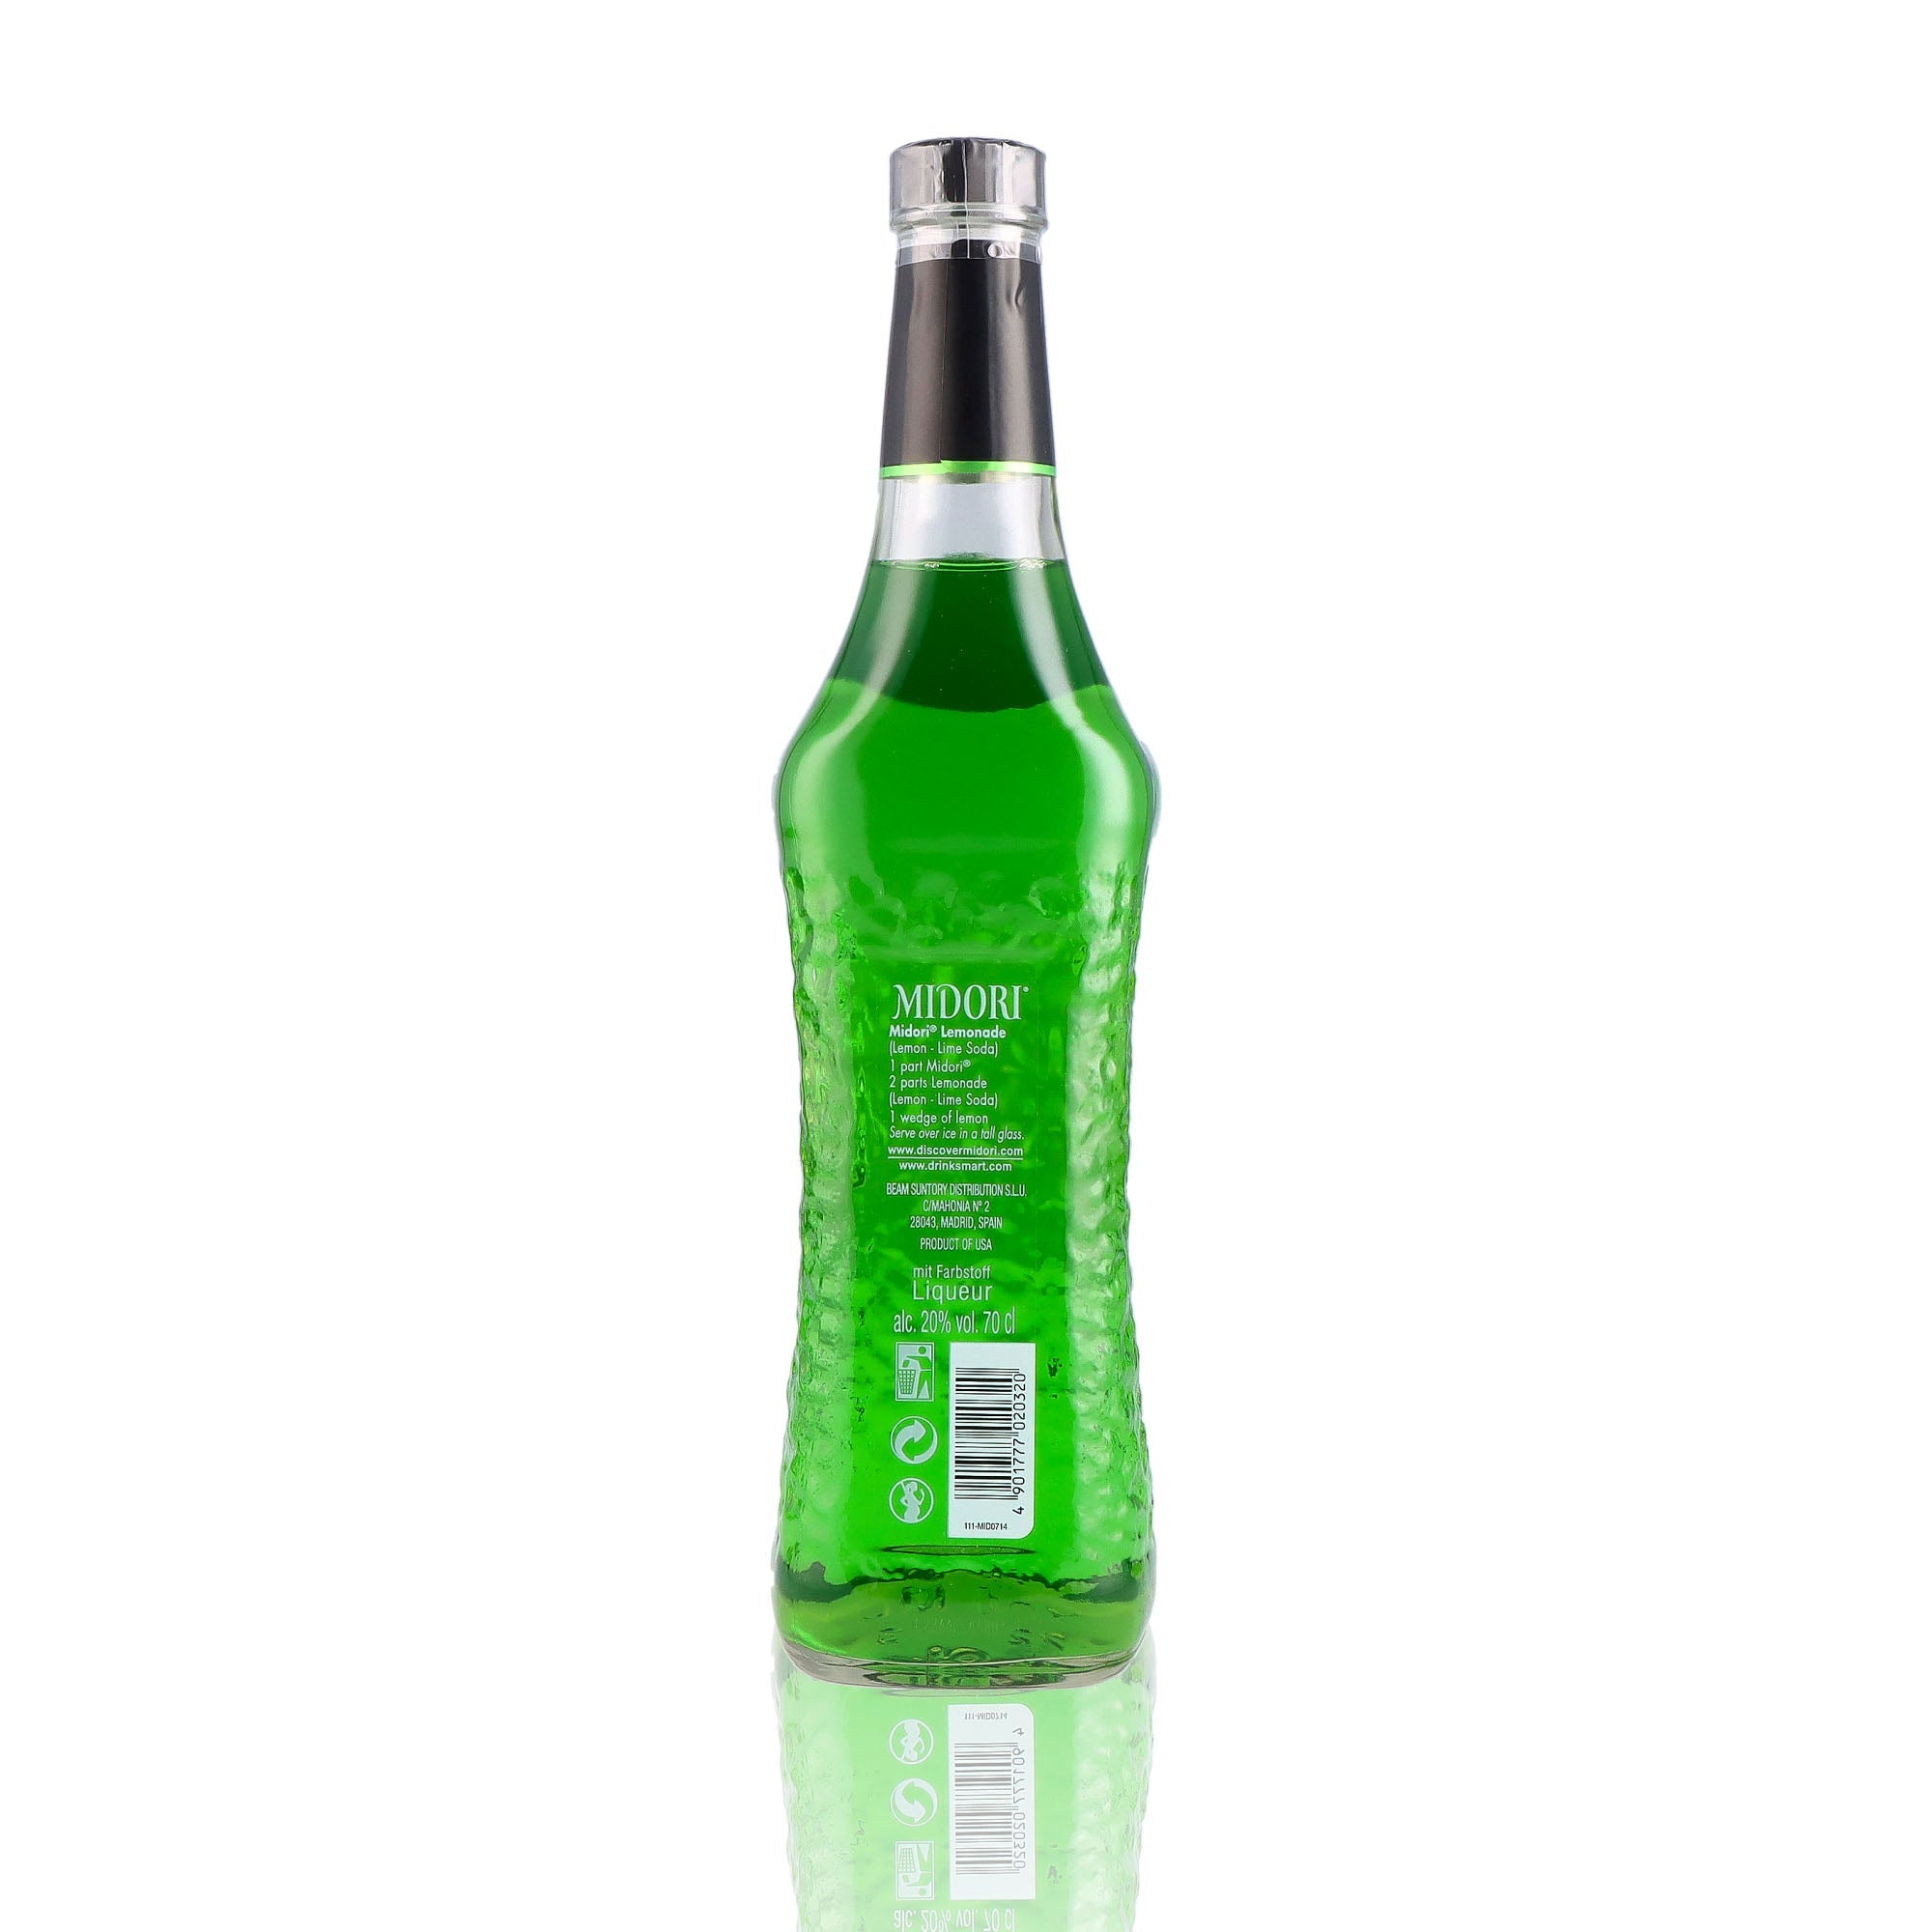 Une bouteille de Liqueur, de la marque Midori, nommée Melon.